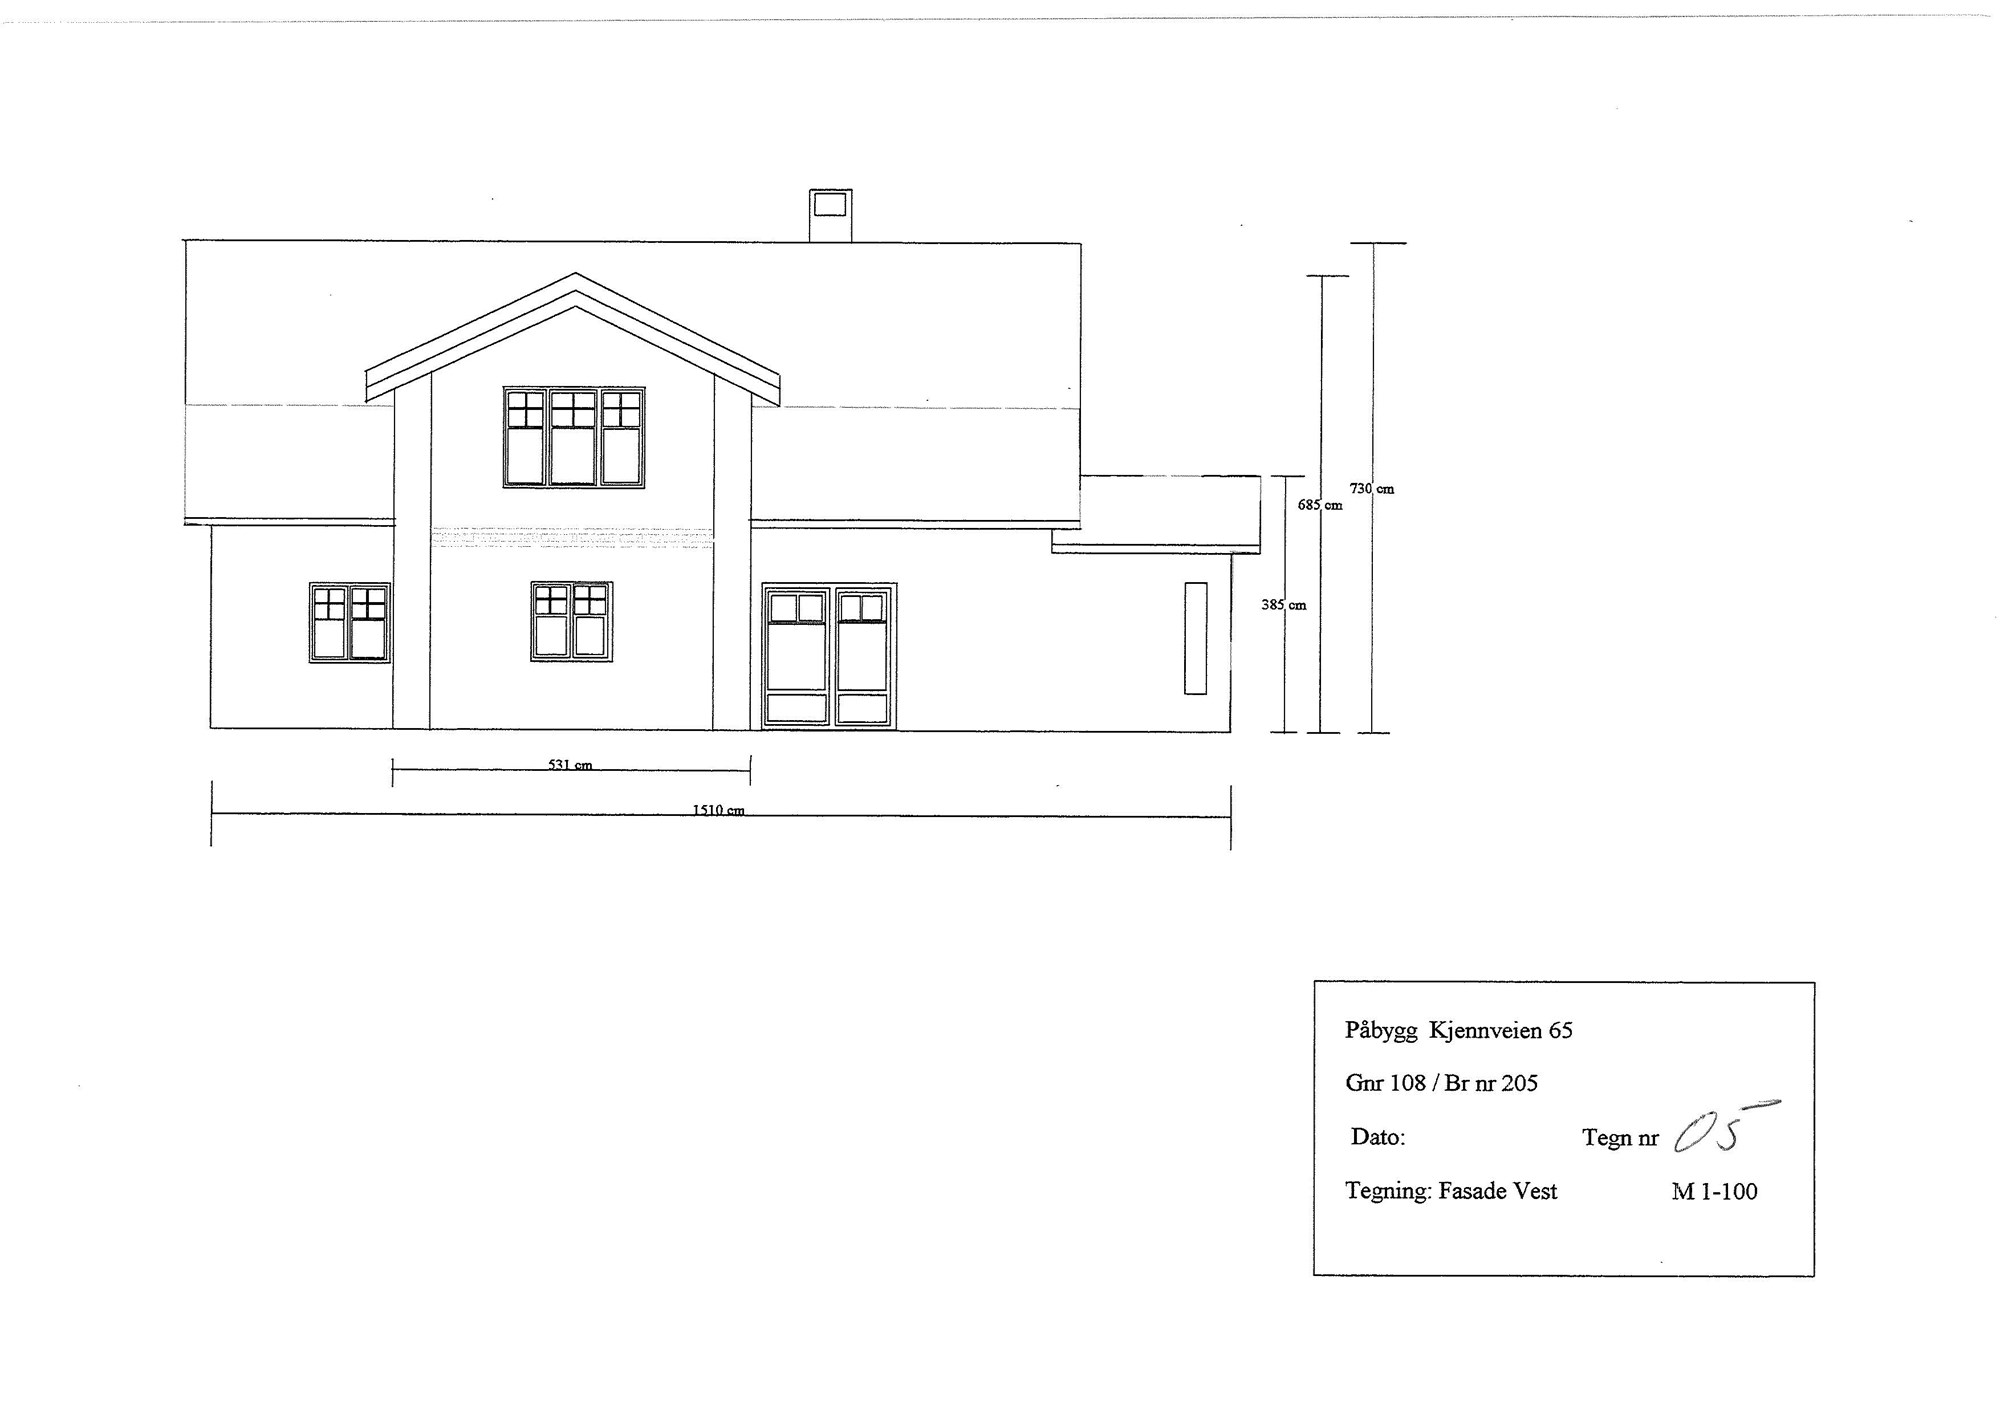 Påbygg  hus på Romerike - tips til utførende firma  - Tegninger_Page_5.jpg - kirkela